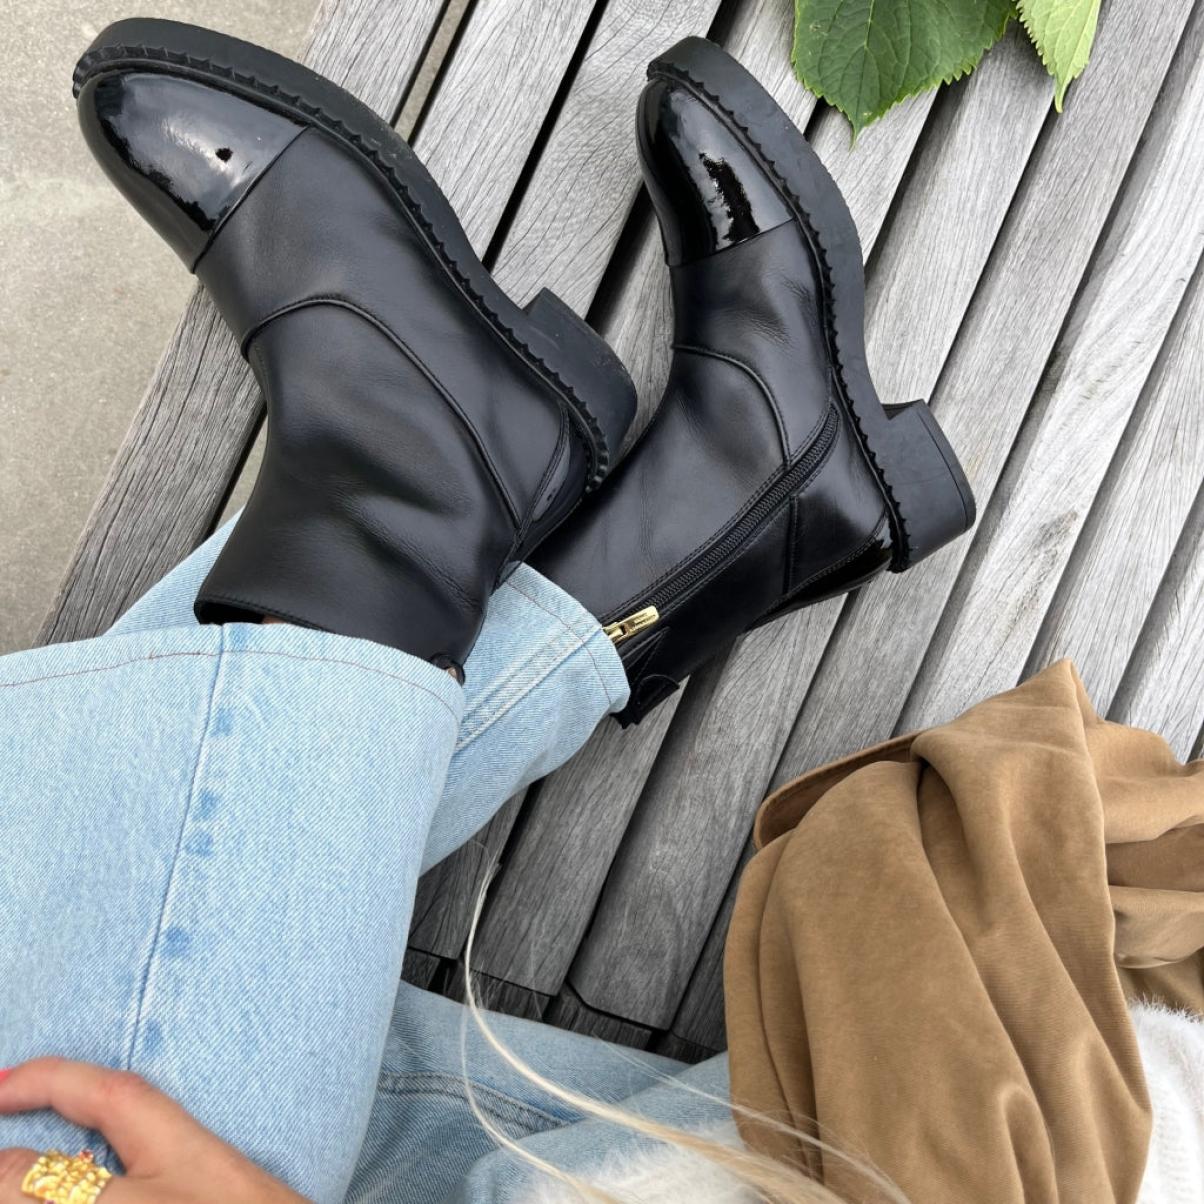 Amie Boots Patent - Black Patent Copenhagen Shoes Women Robust Ankle Boots - 1